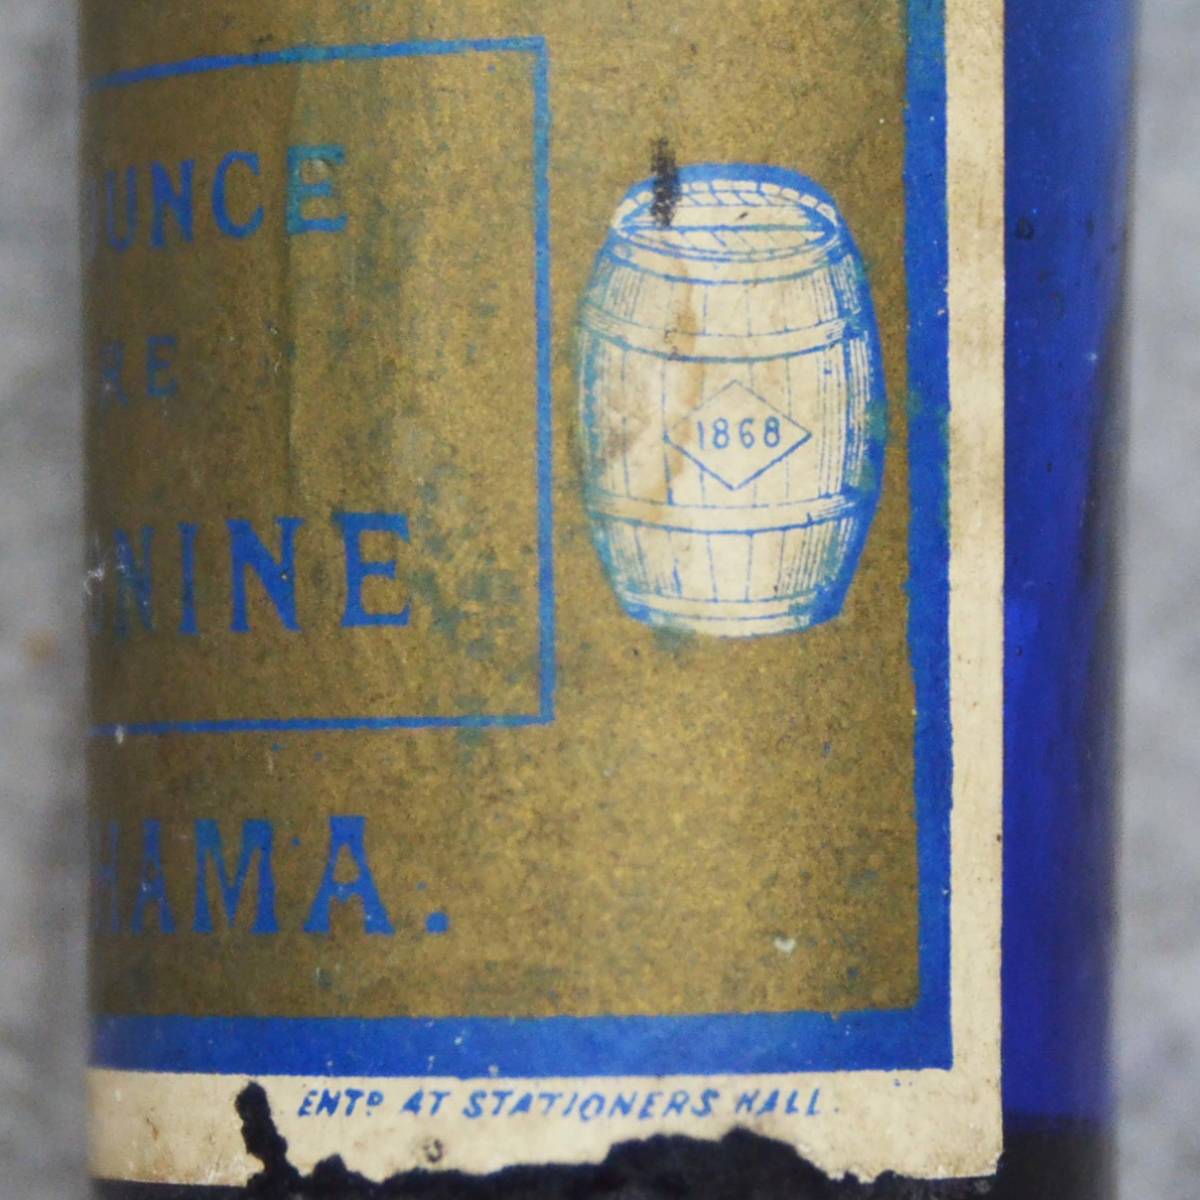 明治時代の瓶 樽マーク1868 Cocking&Co. ONE OUNCE PURE SANTONINE YOKOHAMA ラベル付 詳細不明_画像3